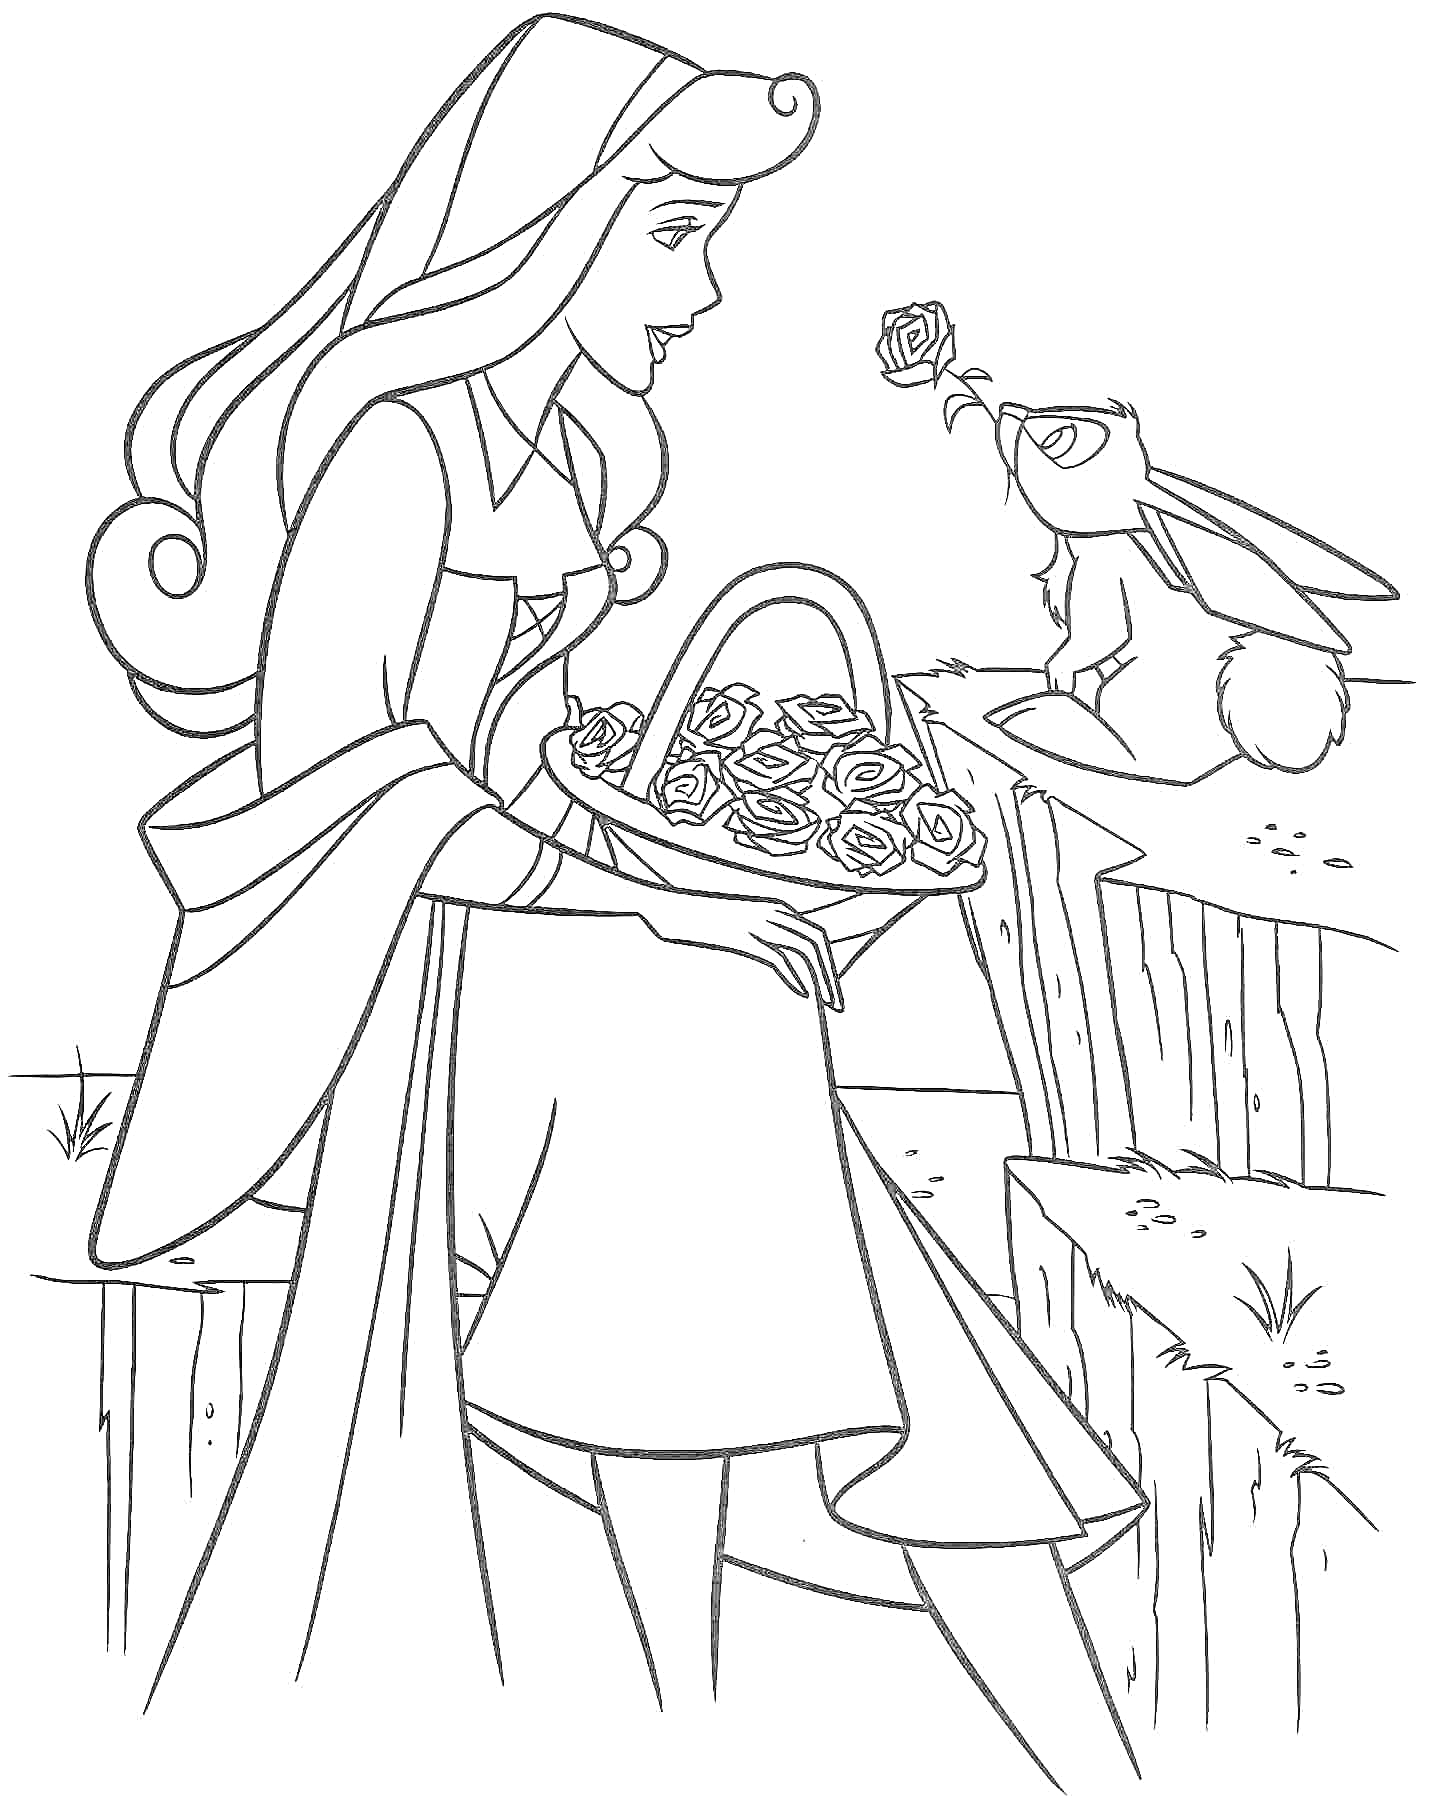 Принцесса Аврора с корзиной роз сидит на скале рядом с кроликом, держащим розу